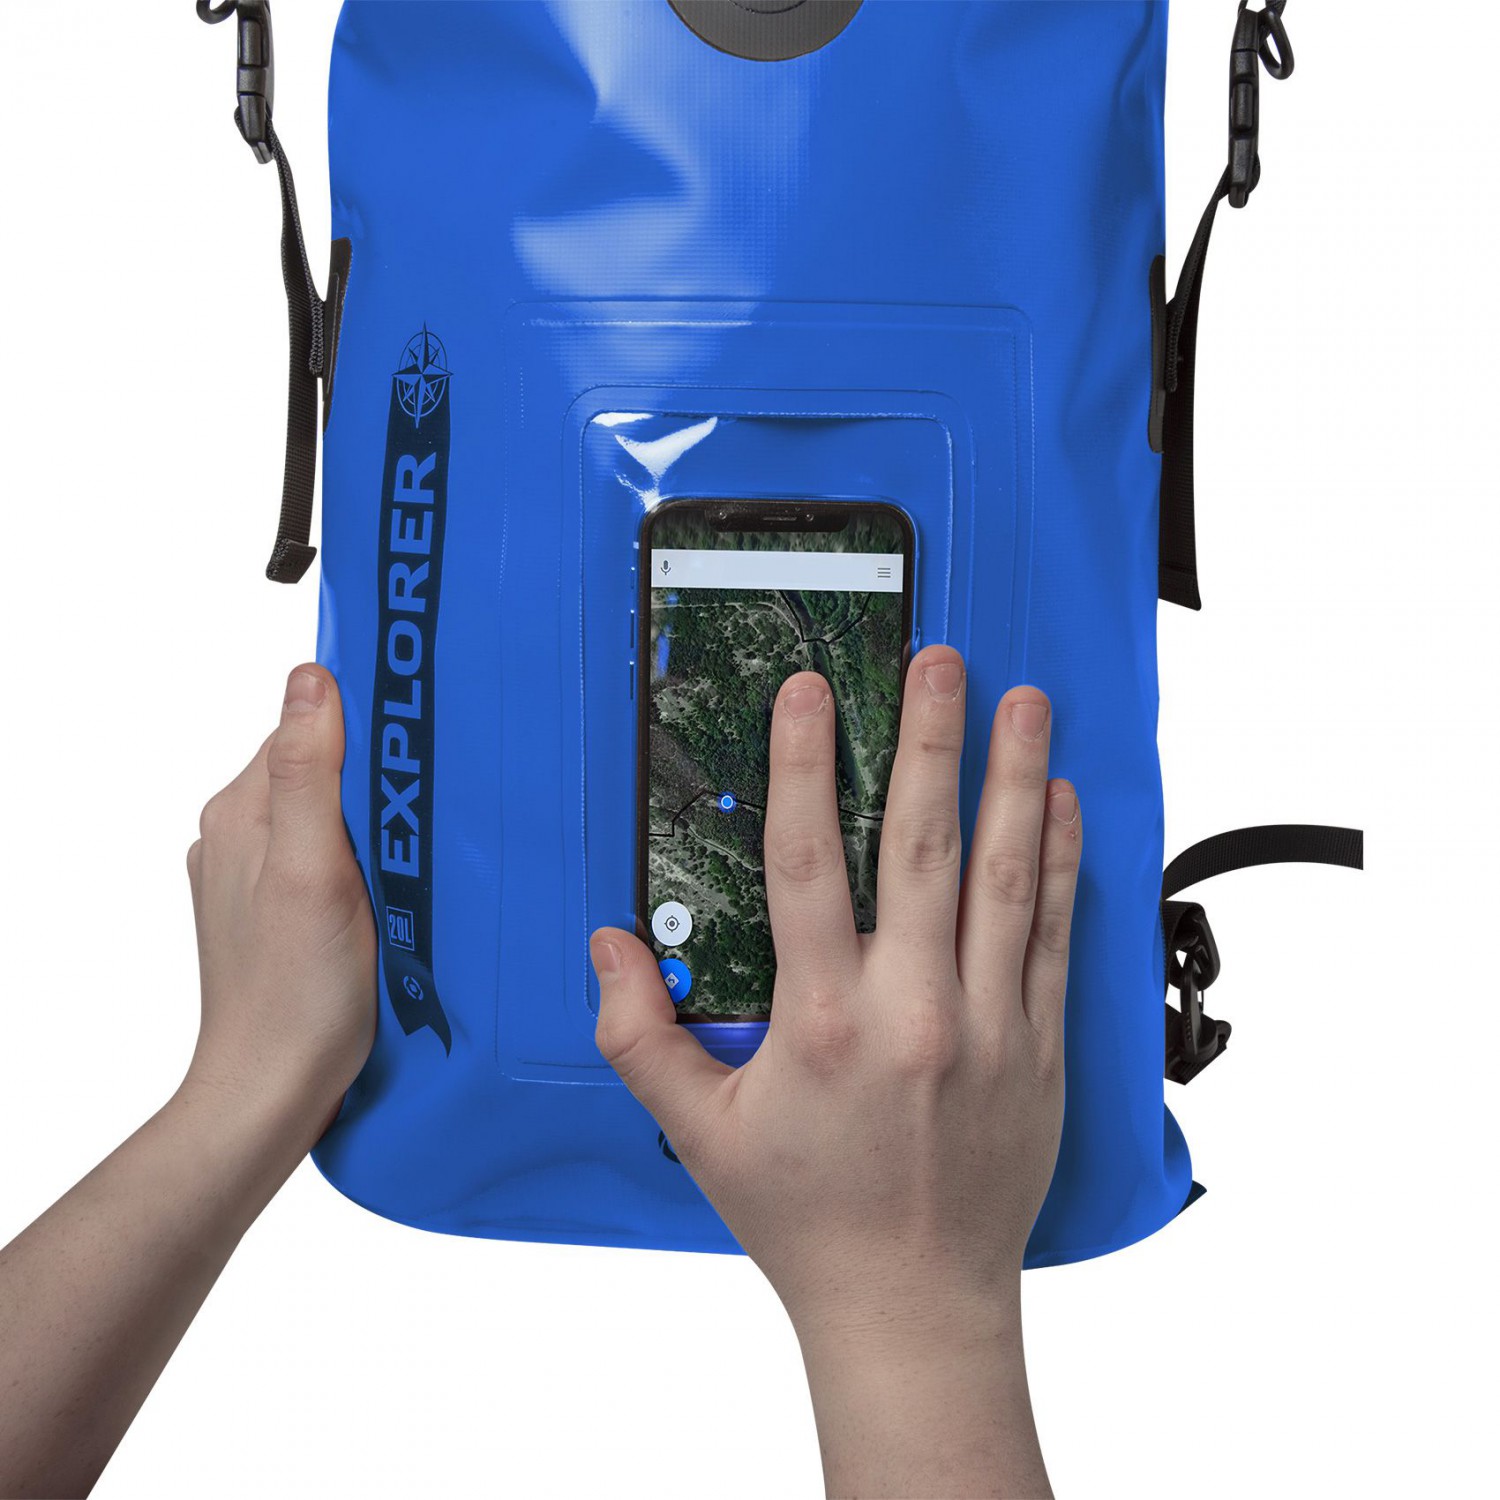 CELLY Explorer voděodolný batoh 20L s kapsou na telefon do 6.5",  modrý